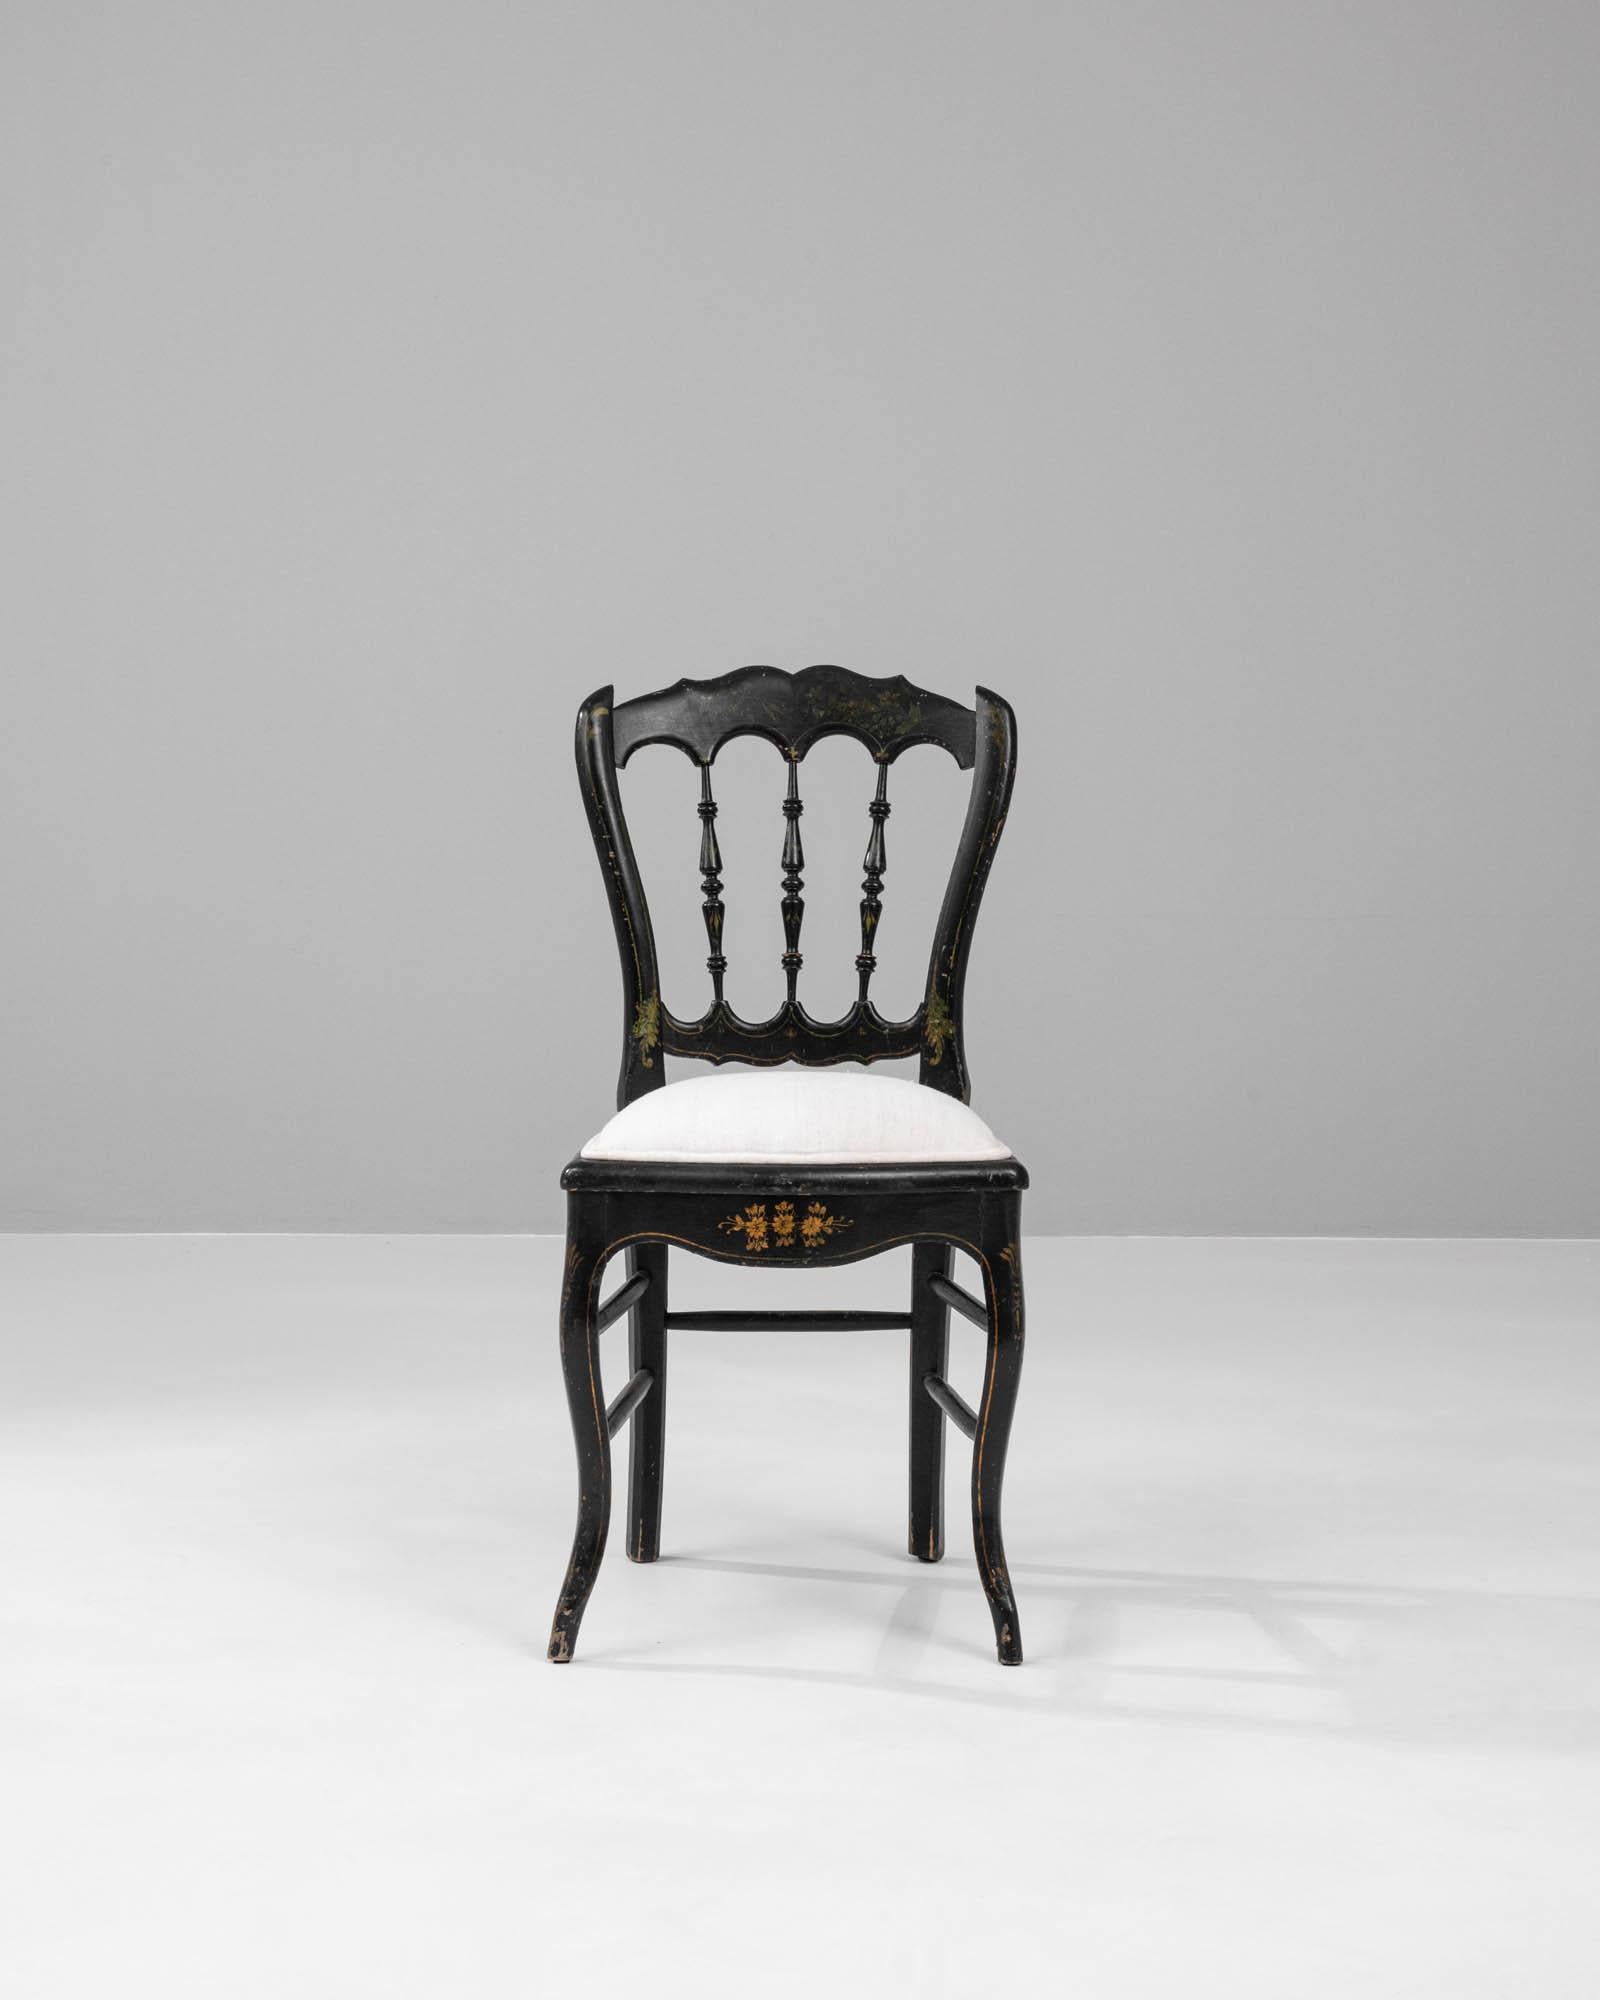 Cette chaise française en bois des années 1880 avec une assise rembourrée est un bel exemple du design opulent de la fin du XIXe siècle. Le cadre de la chaise, de couleur ébène, est gracieusement orné de motifs floraux dorés, dont les détails